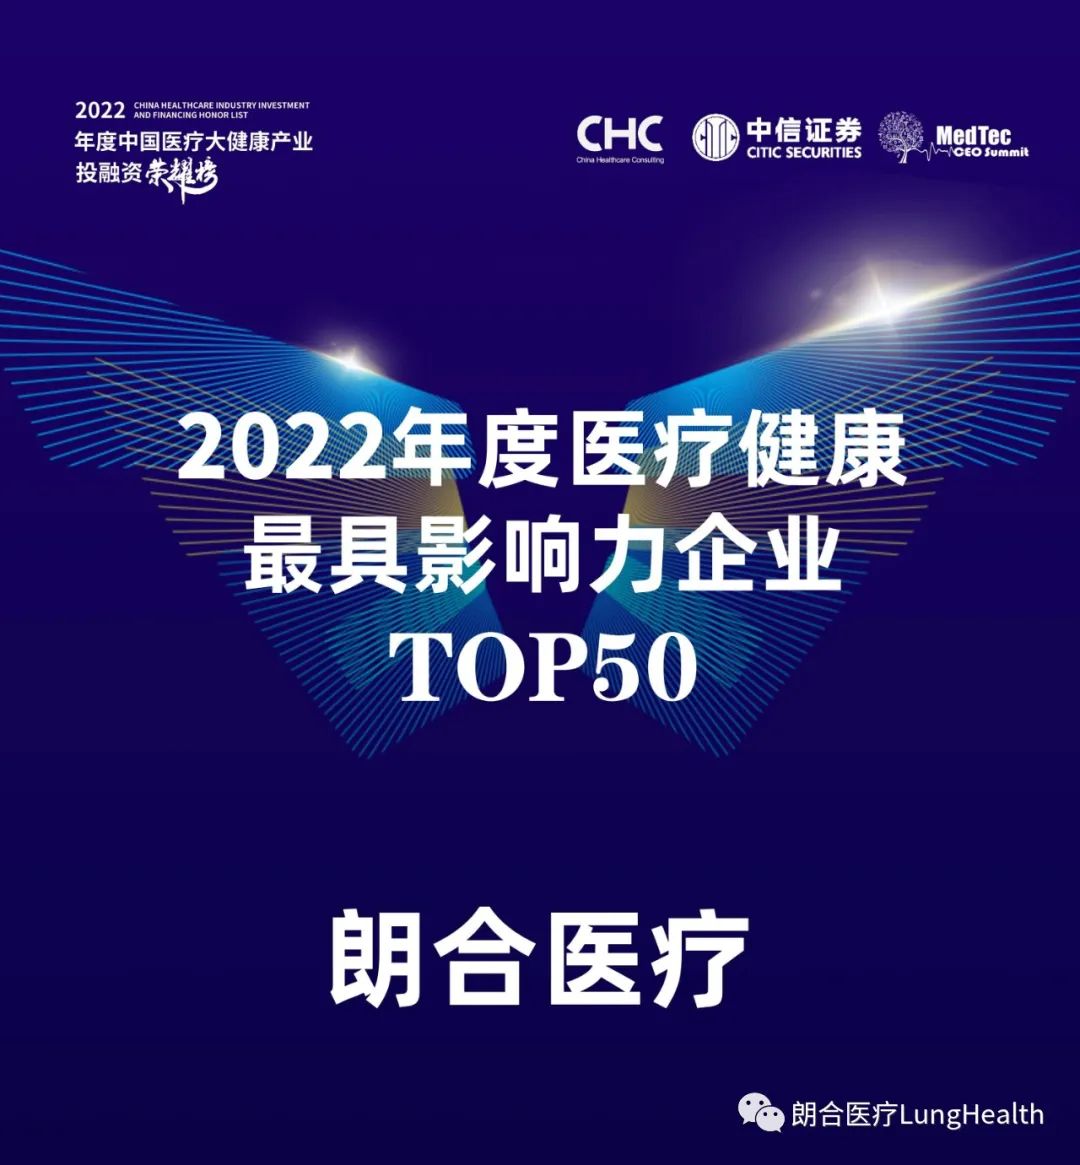 朗合医疗荣获“2022年度医疗健康最具影响力企业TOP 50”(图1)